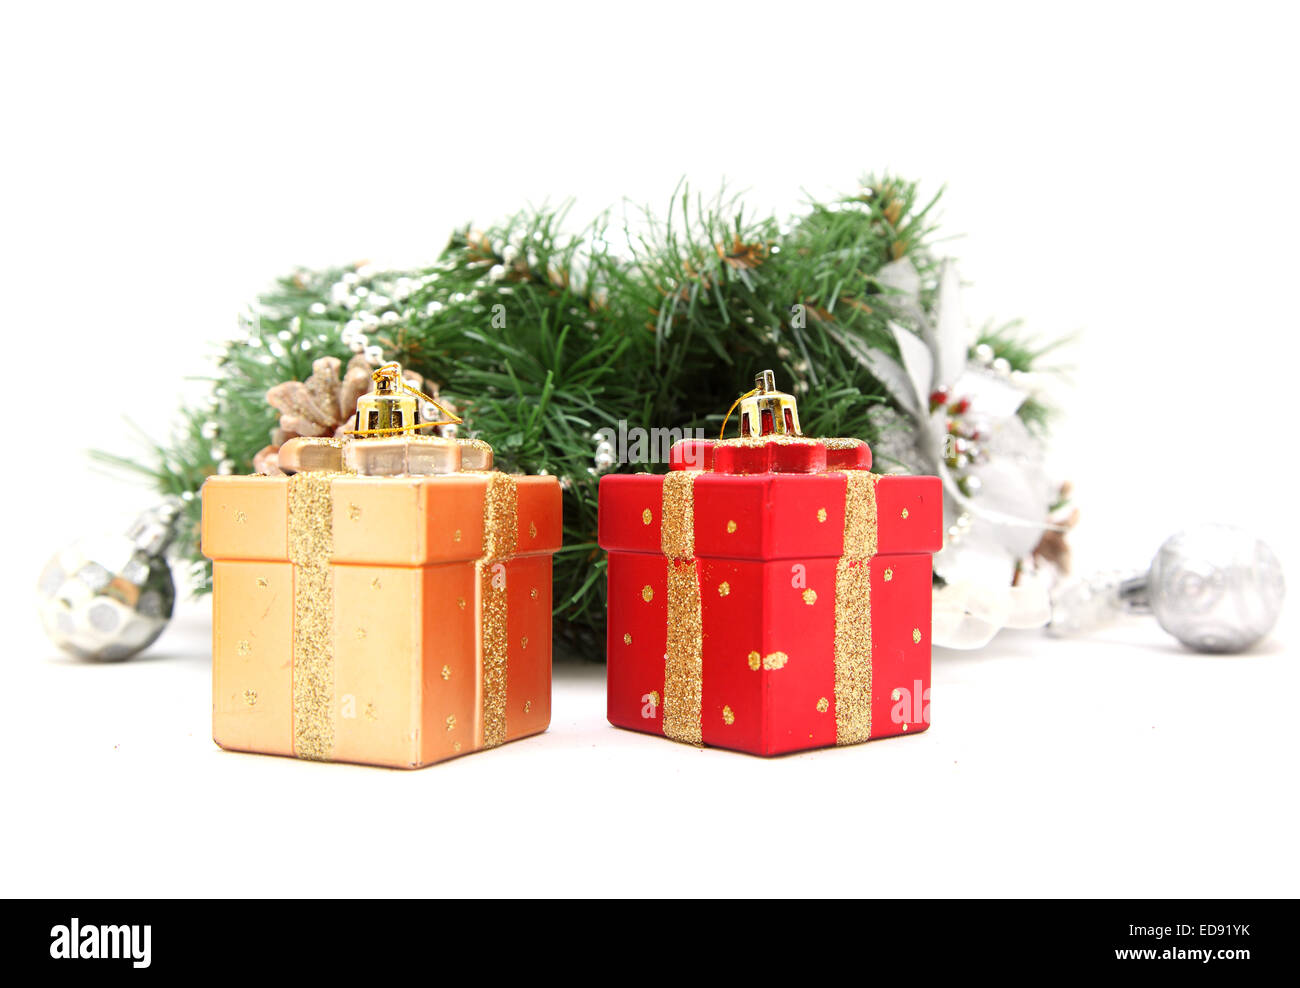 Christmas toys and Christmas tree Stock Photo